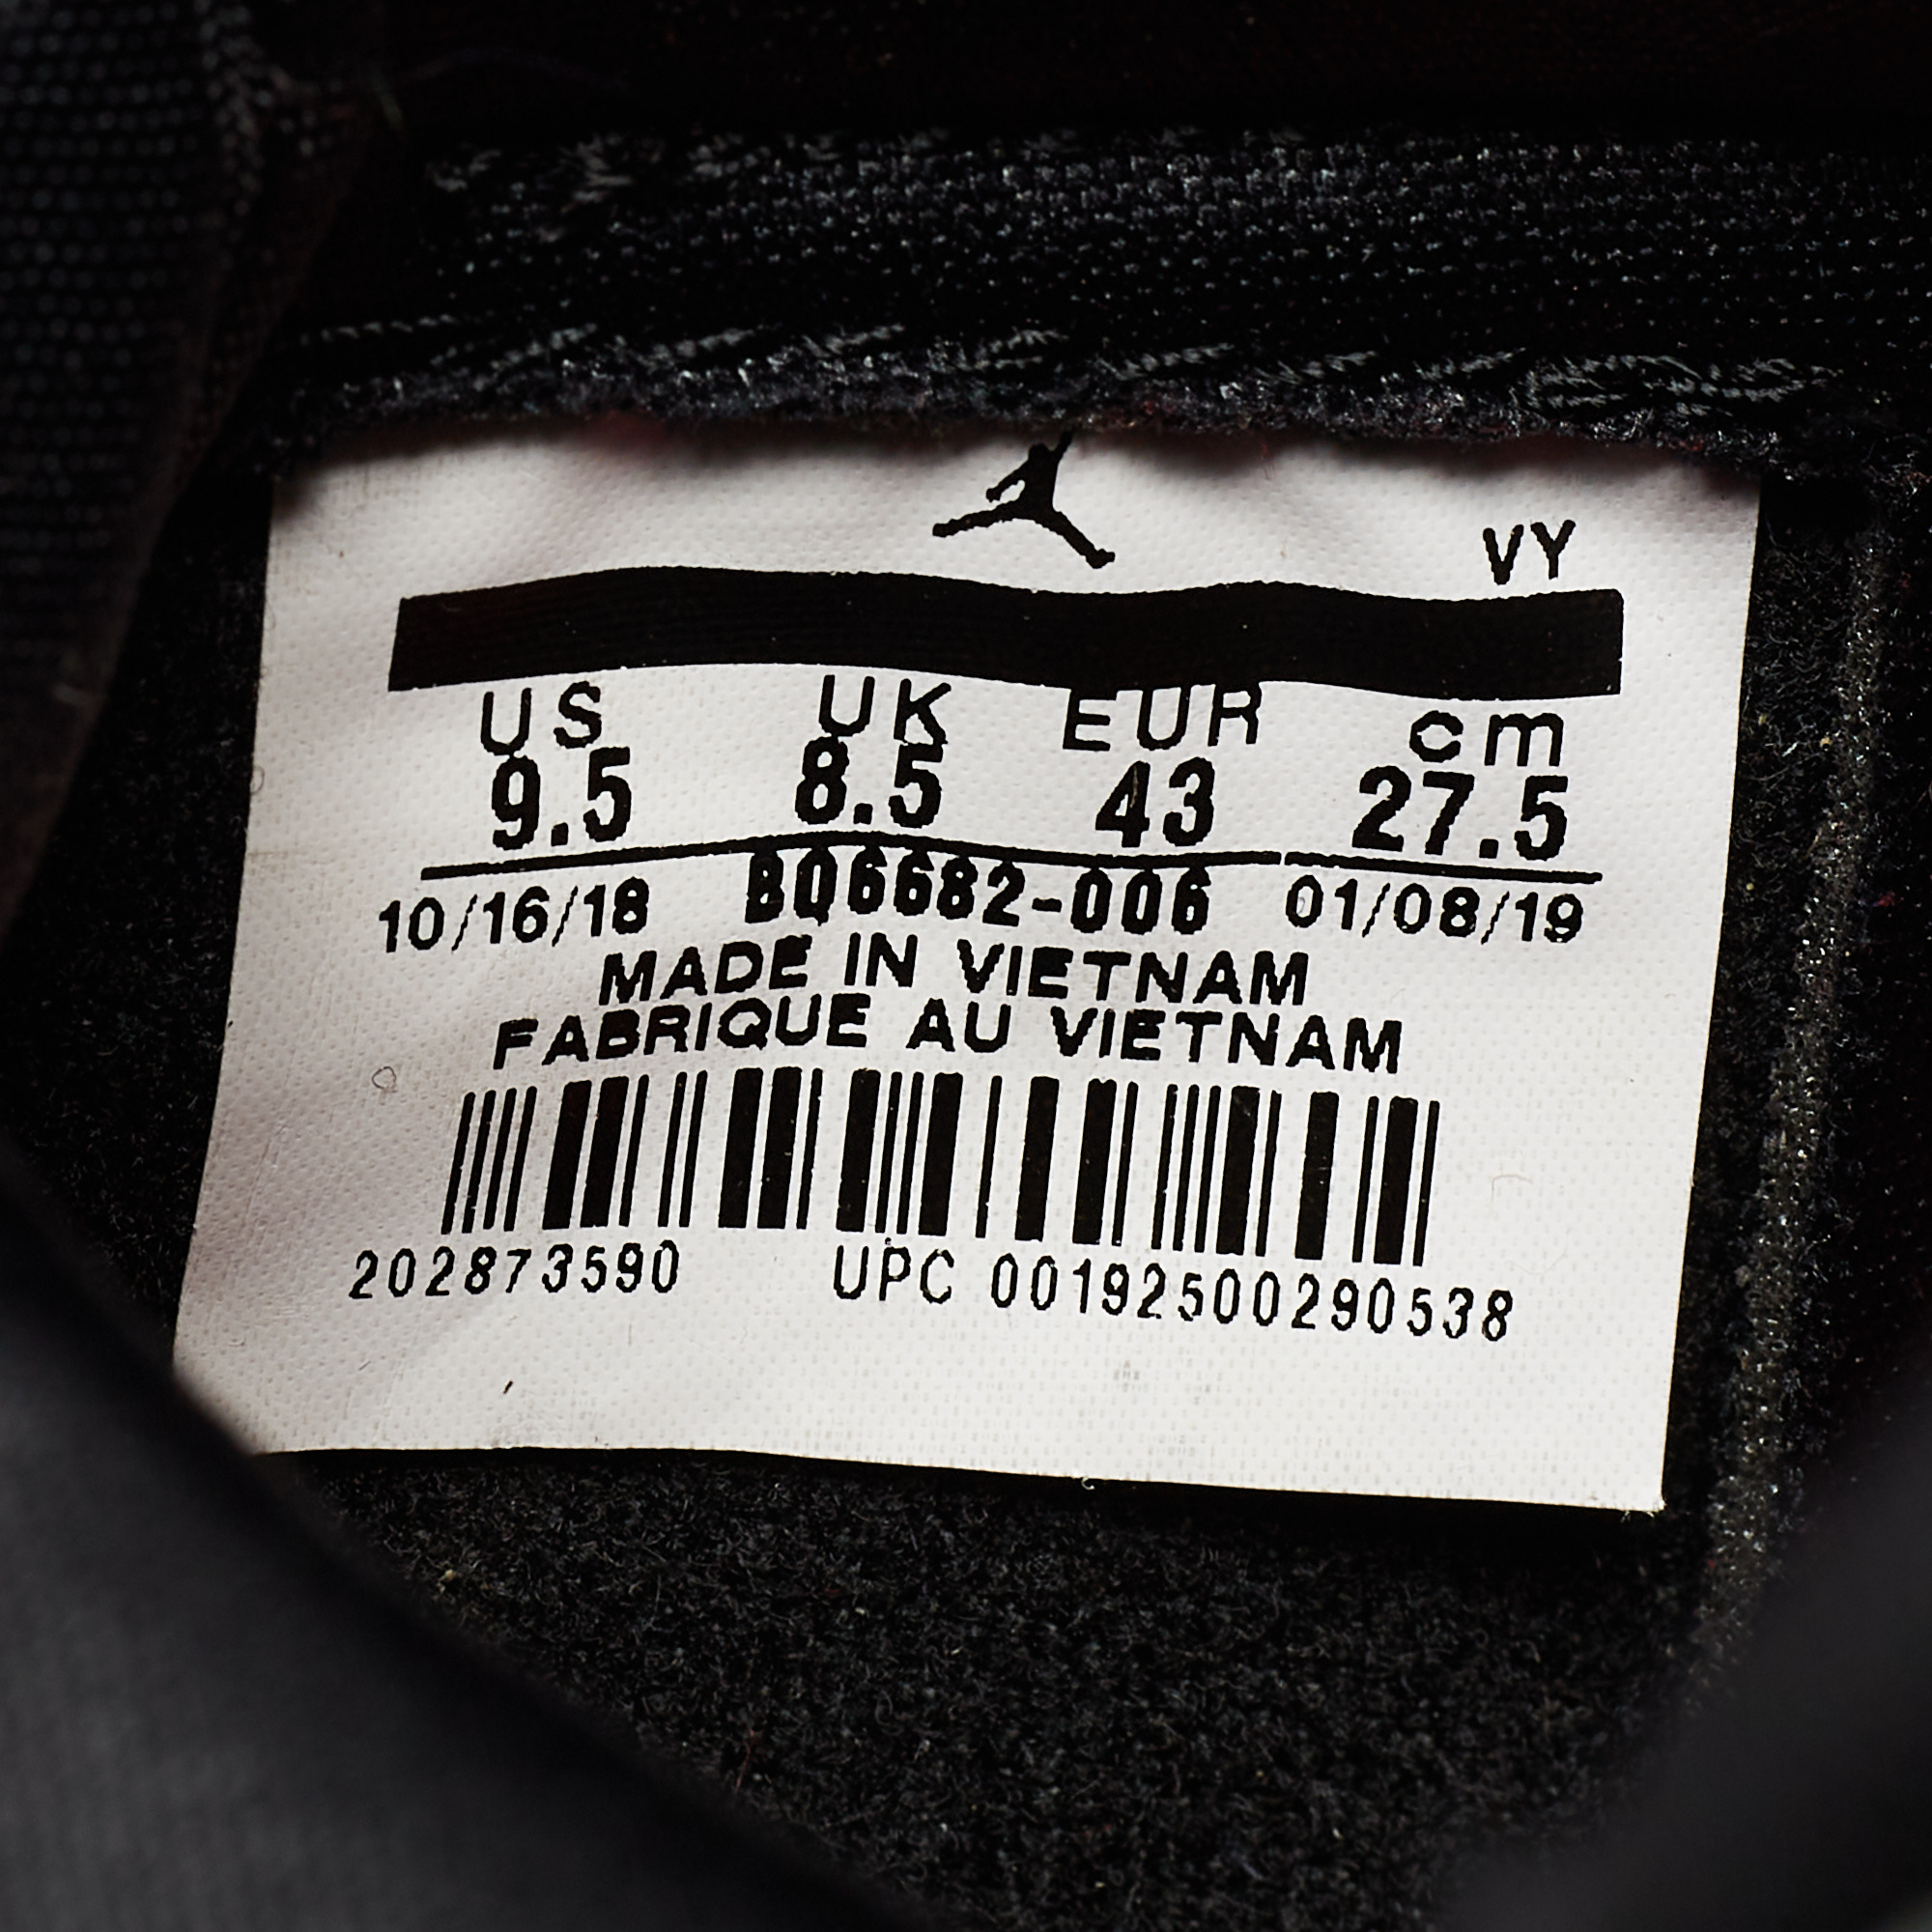 Air Jordan Black Leather Air Jordan1 Sb Dunk High Sneakers Size 43